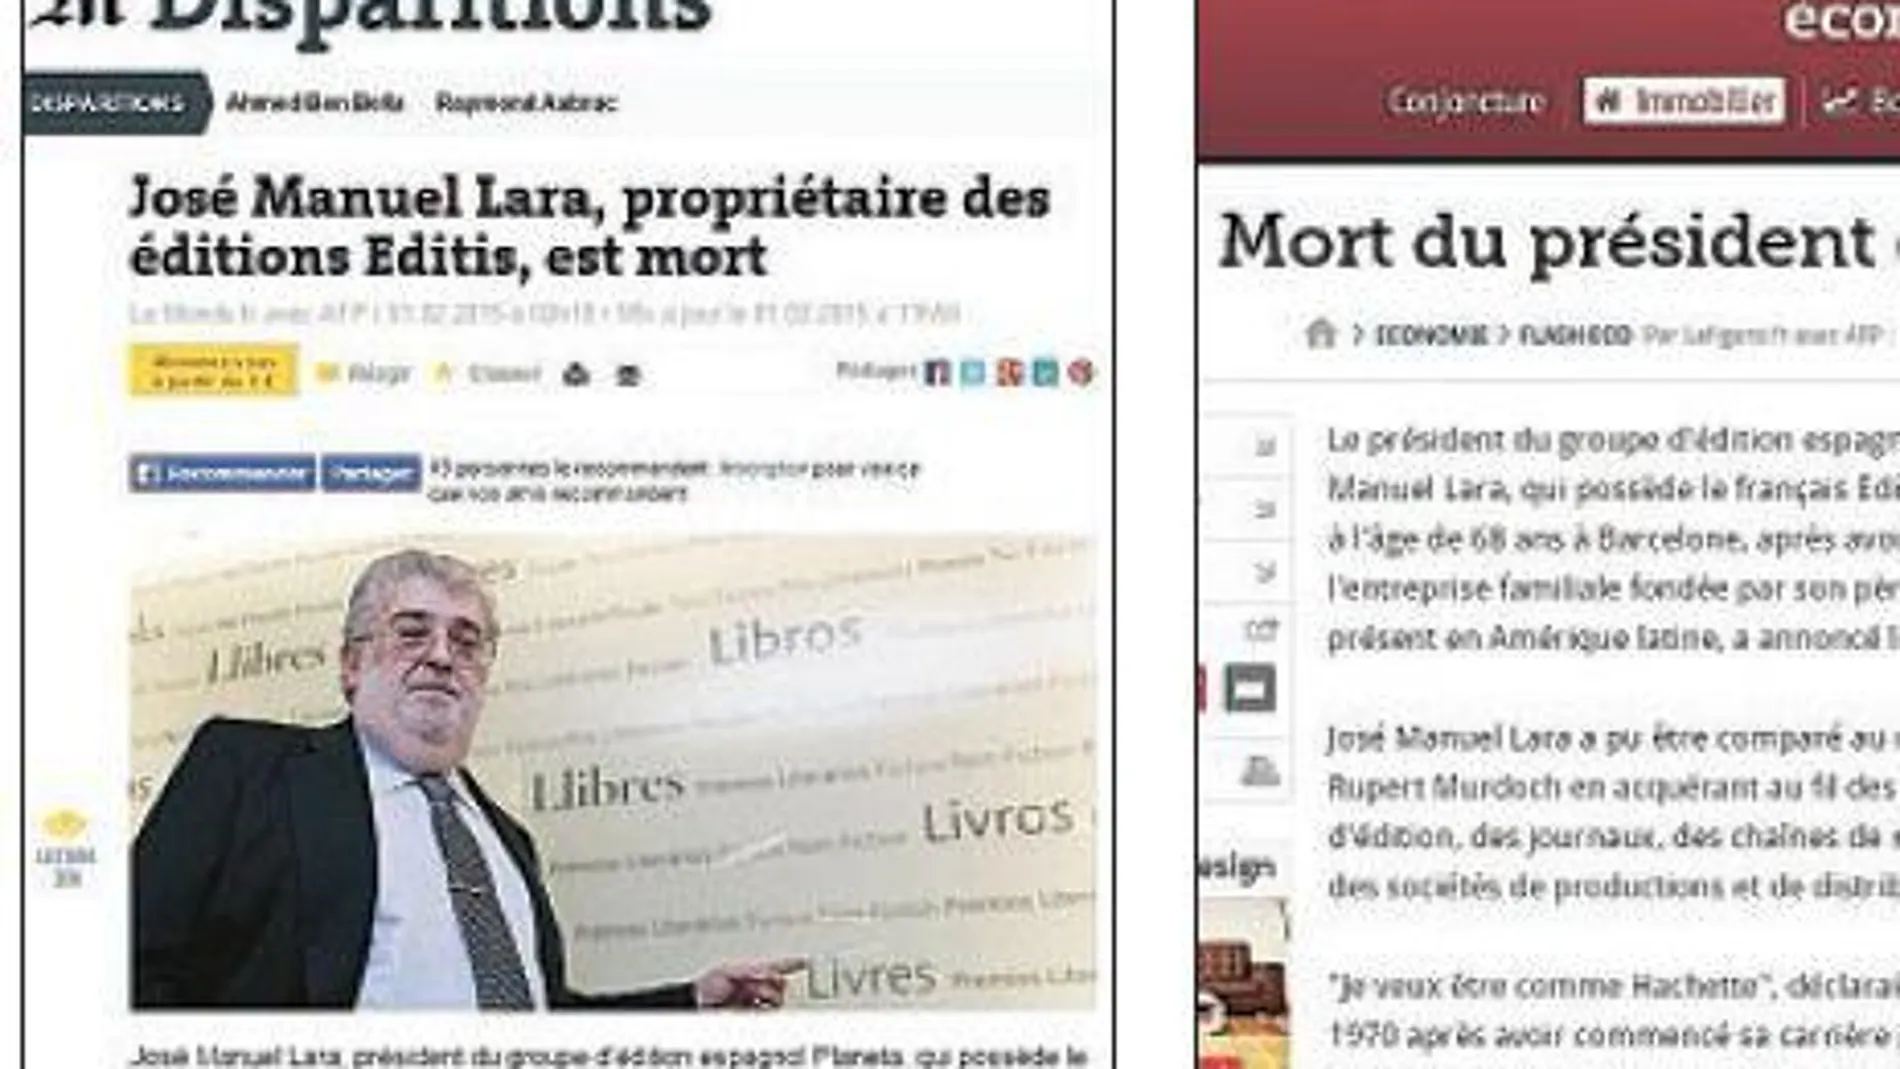 «Le Monde» dedicó un artículo a Lara. El diario galo «Le Figaro» se acordó del empresario